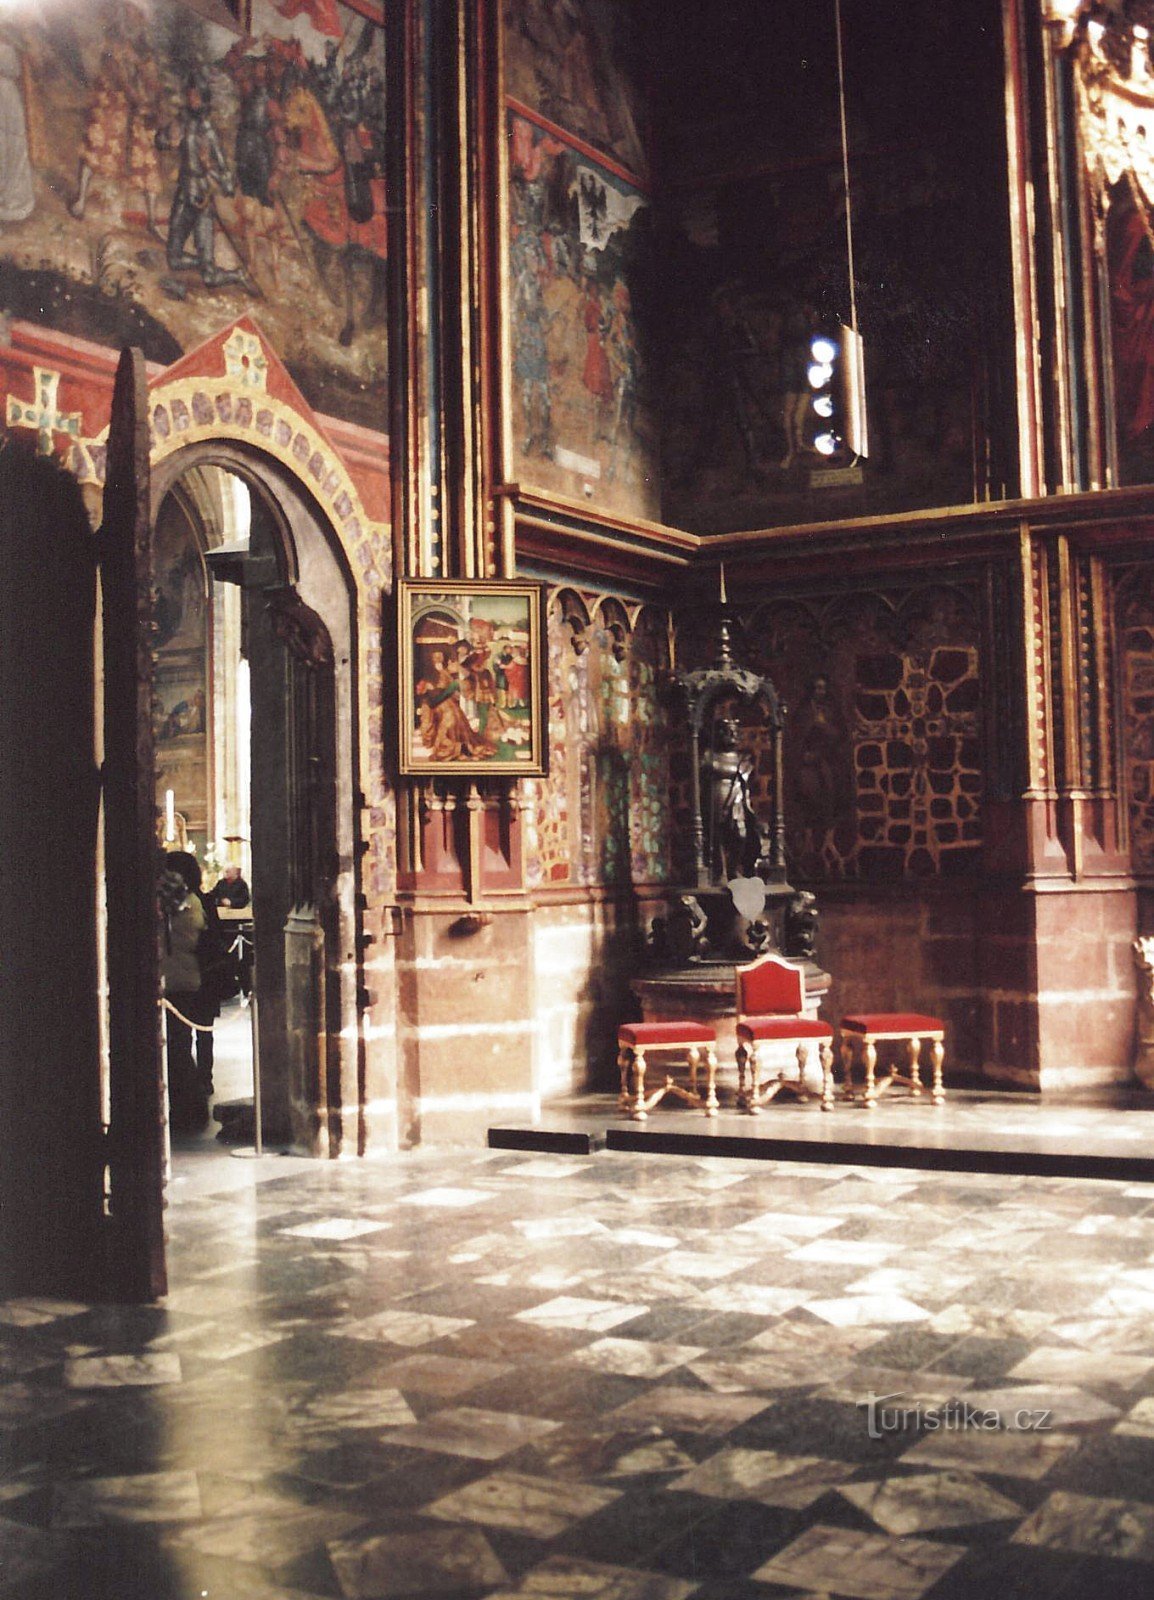 プラハ - 聖チャペルヴァーツラフ、中央ヨーロッパの最も貴重な芸術的宝物